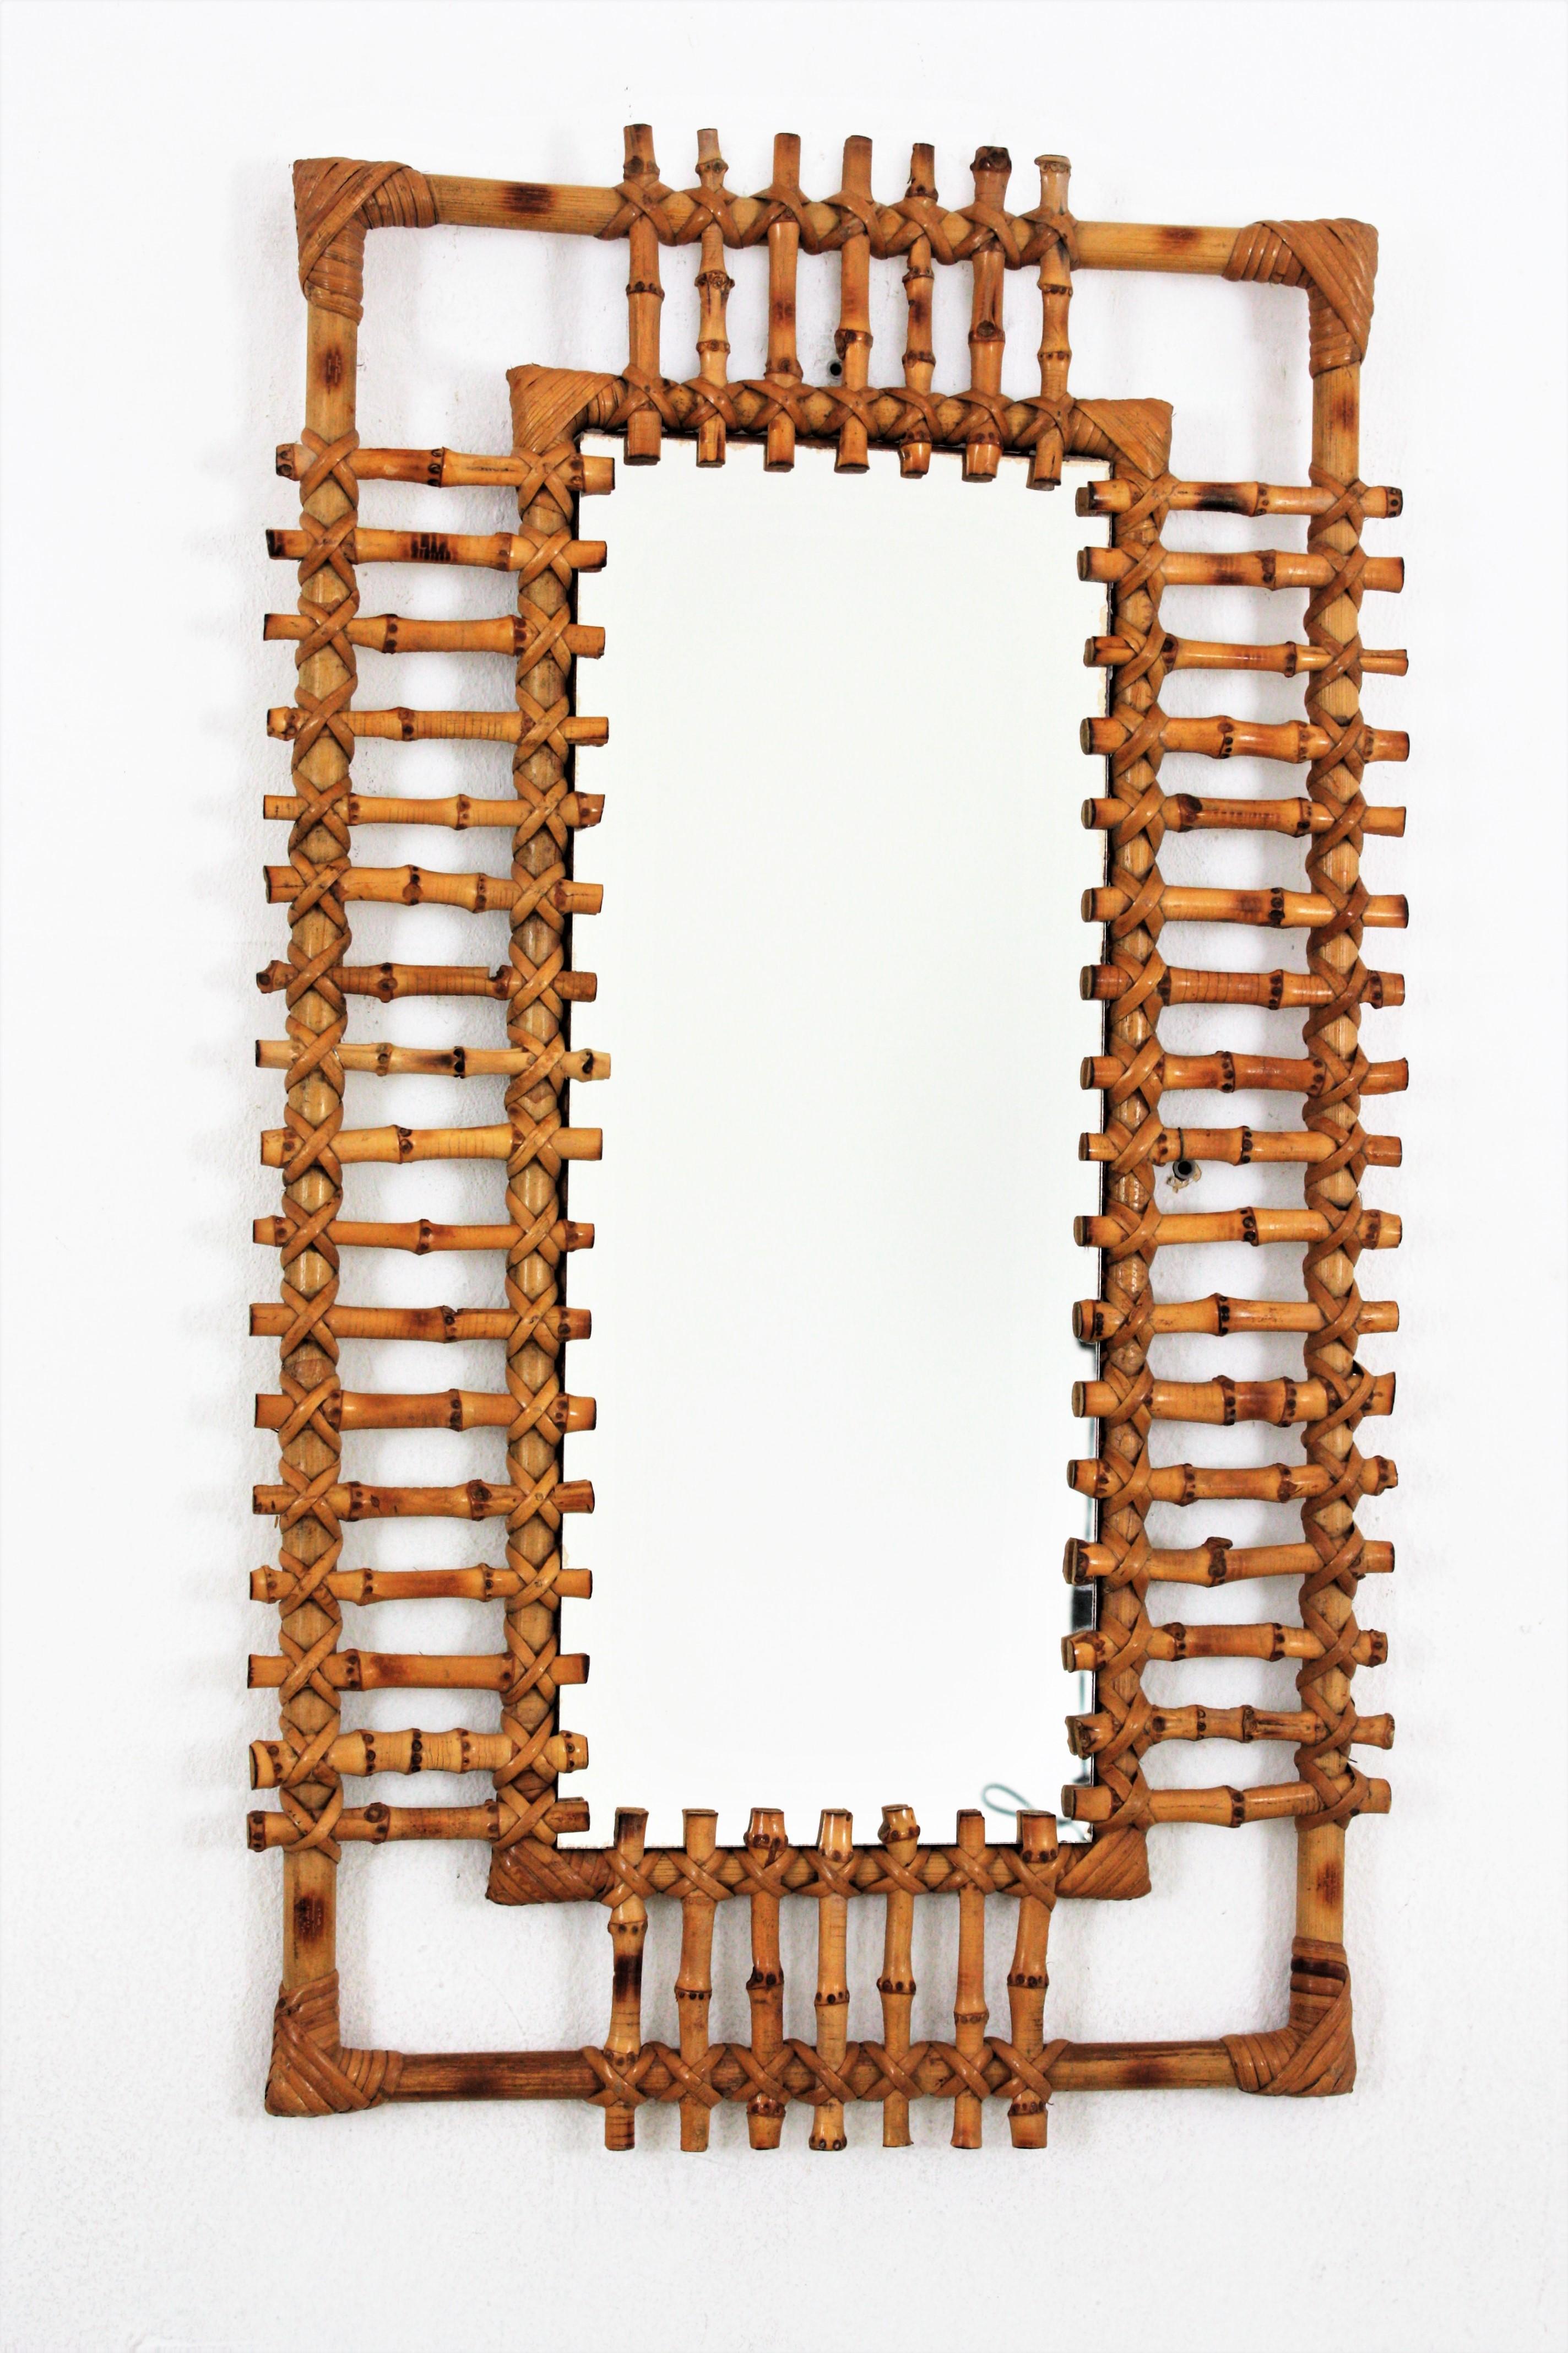 Ein schöner, handgefertigter, rechteckiger Spiegel aus französischem Riviera-Bambus, umrahmt von Schilfrohrstrahlen. Frankreich, 1950-1960.
Dieses Stück hat den ganzen Geschmack und die Frische des mediterranen Stils.
Interessant für die